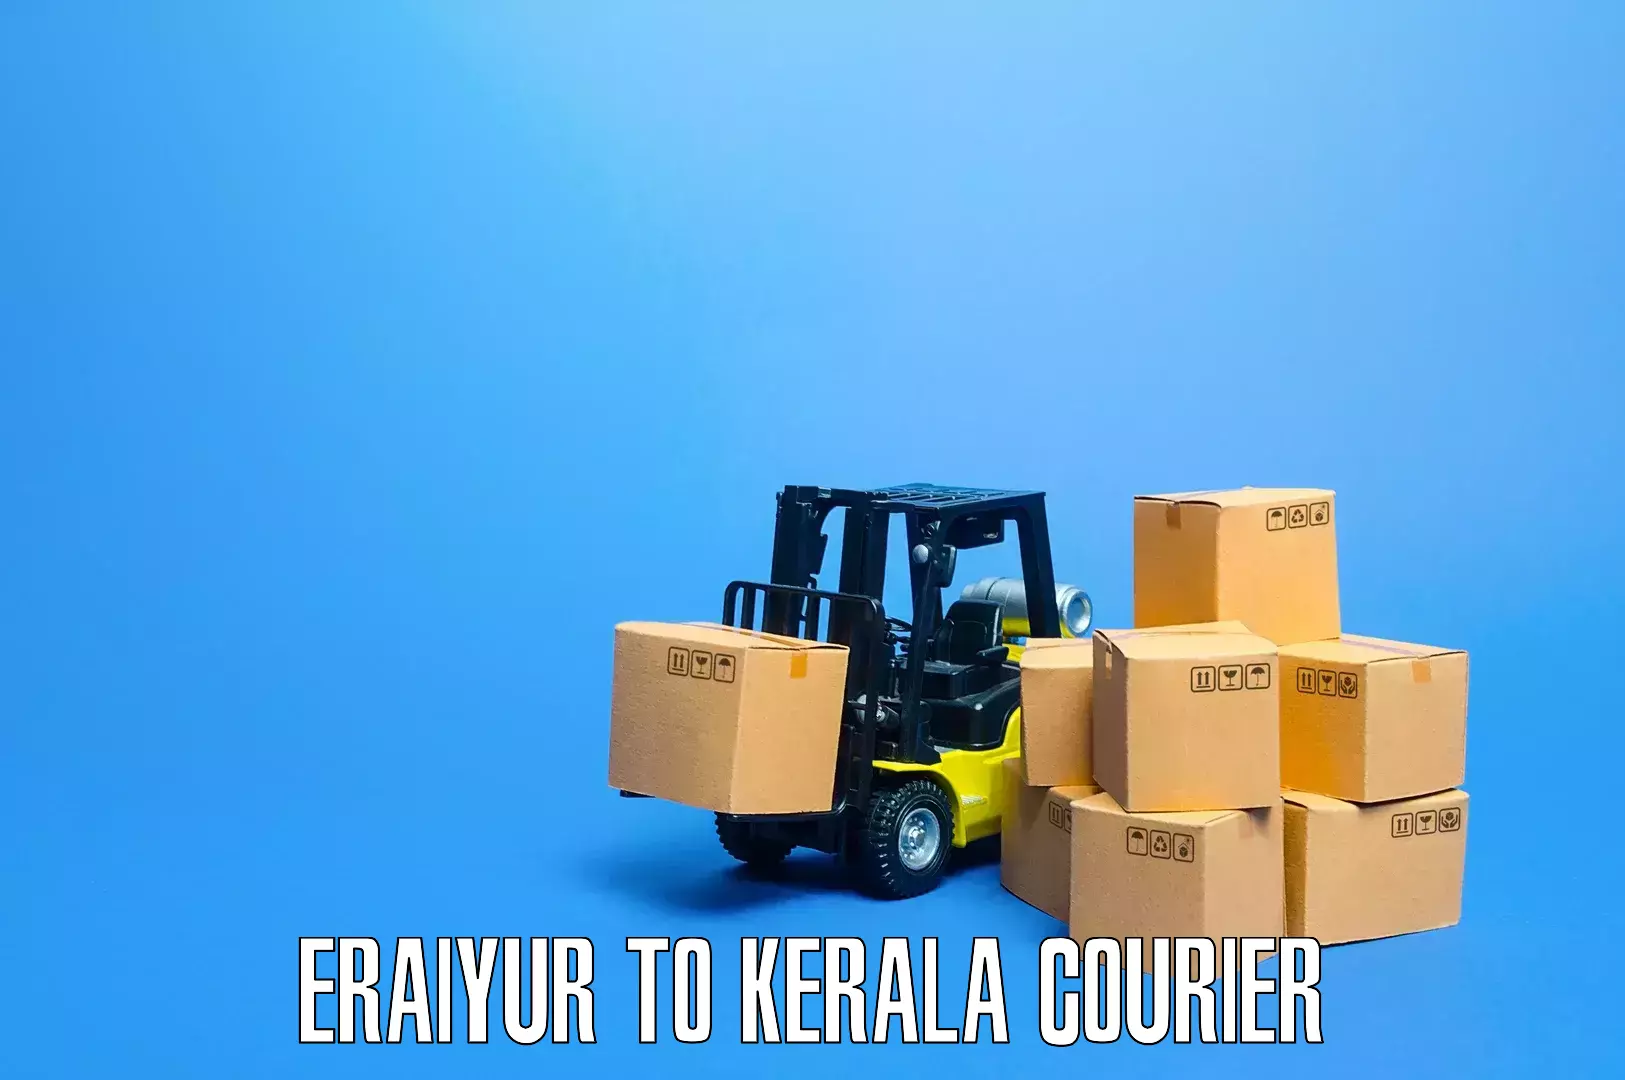 Professional movers Eraiyur to Adimali